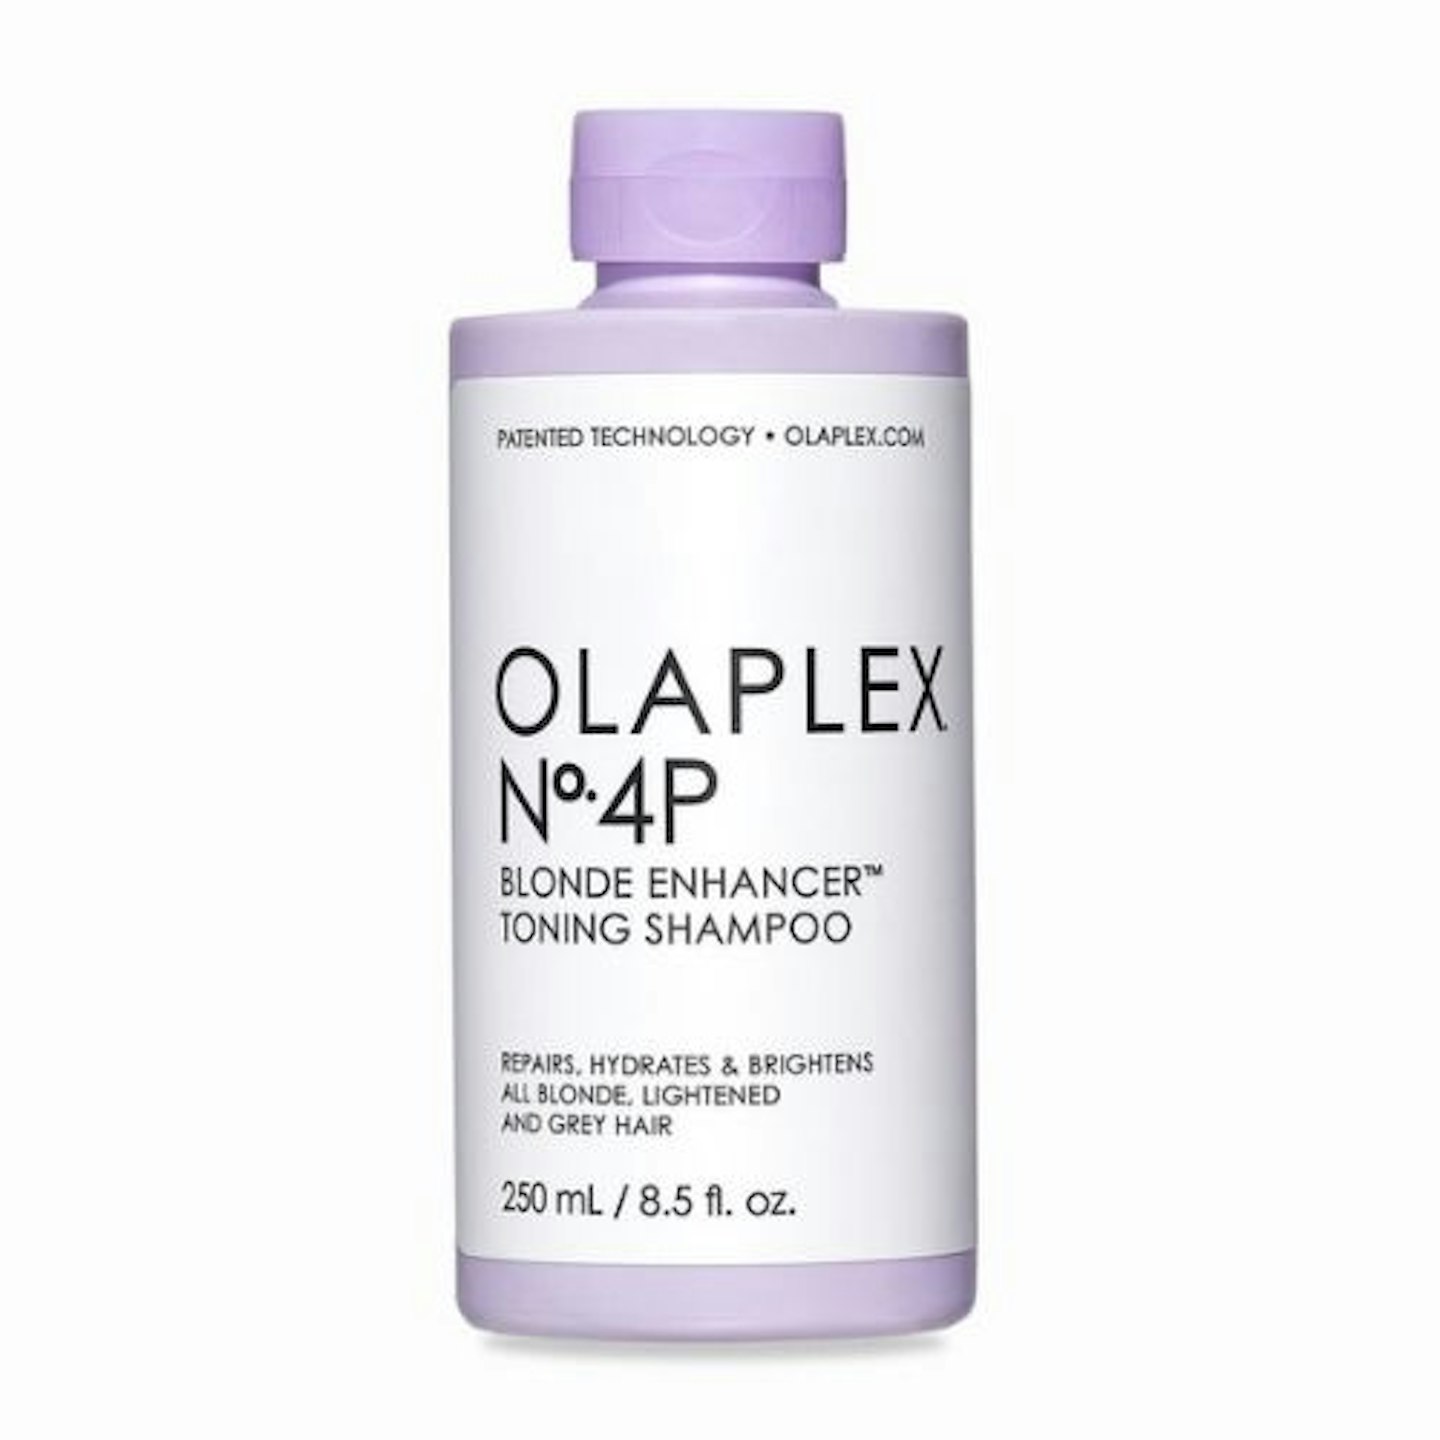 Olaplex No. 4p Blonde Enhancer Toning Shampoo, £20.80